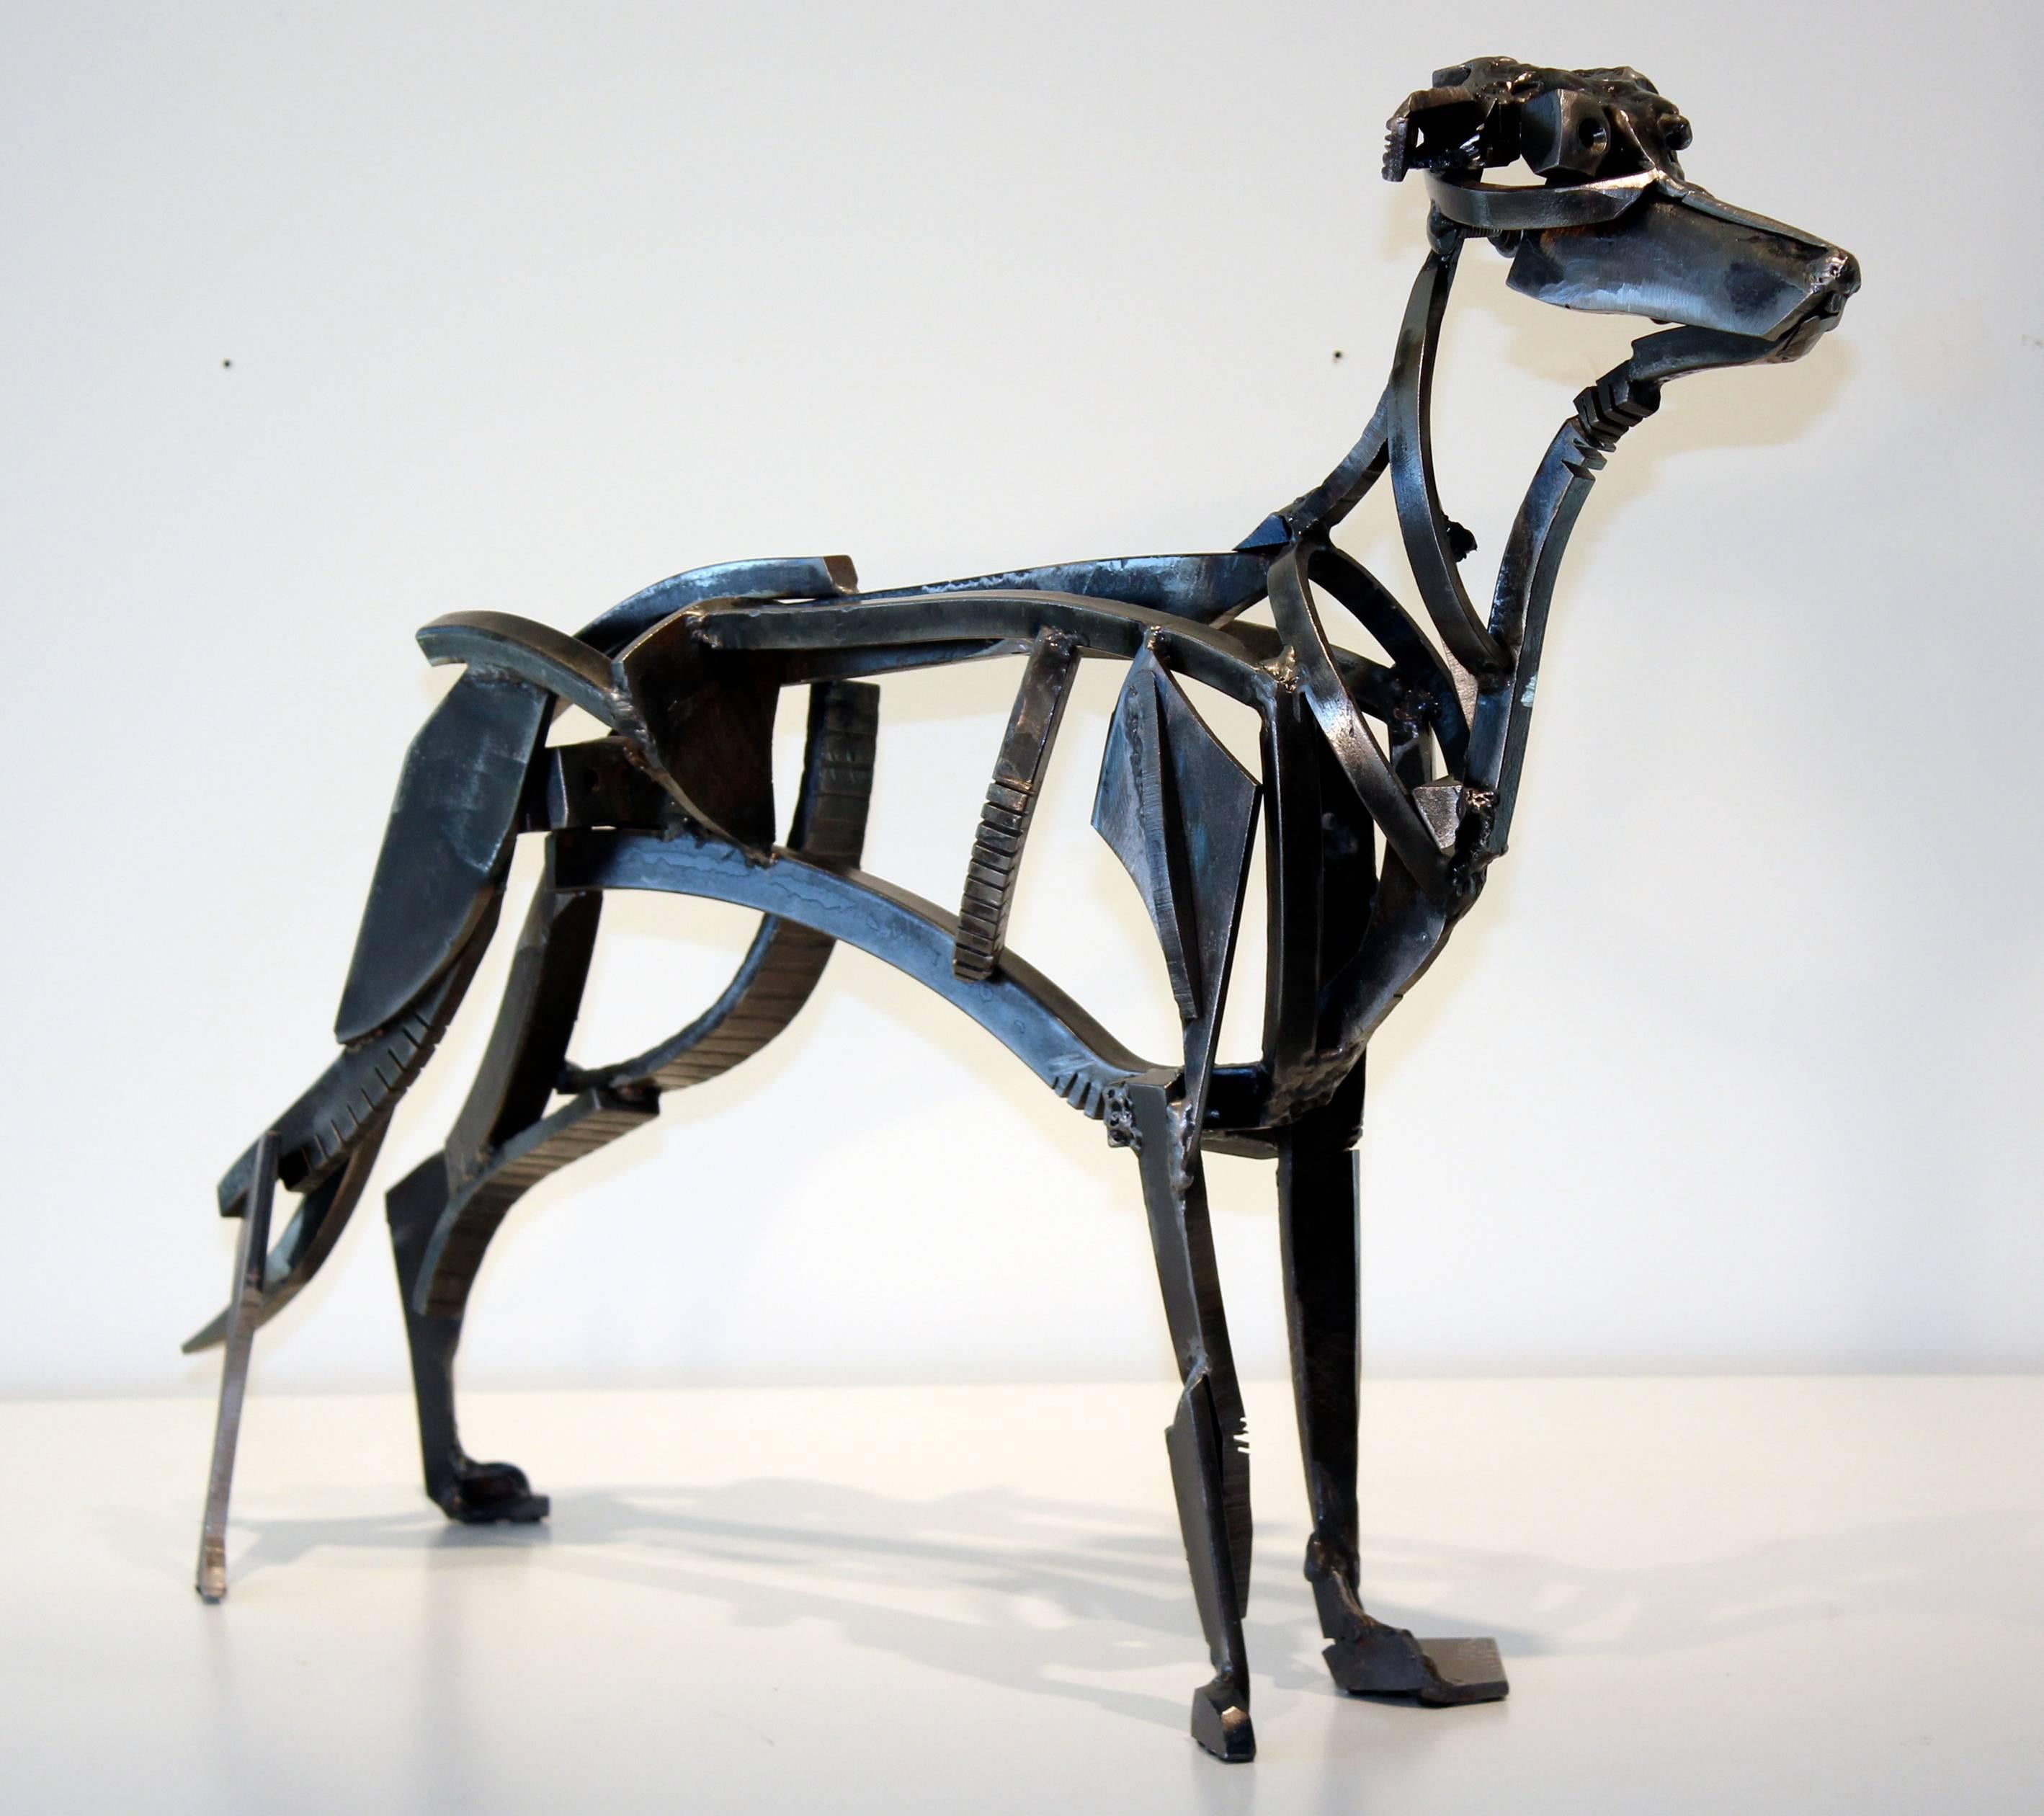 Wojtek Biczysko Figurative Sculpture - Mechanical Dog, steel sculpture